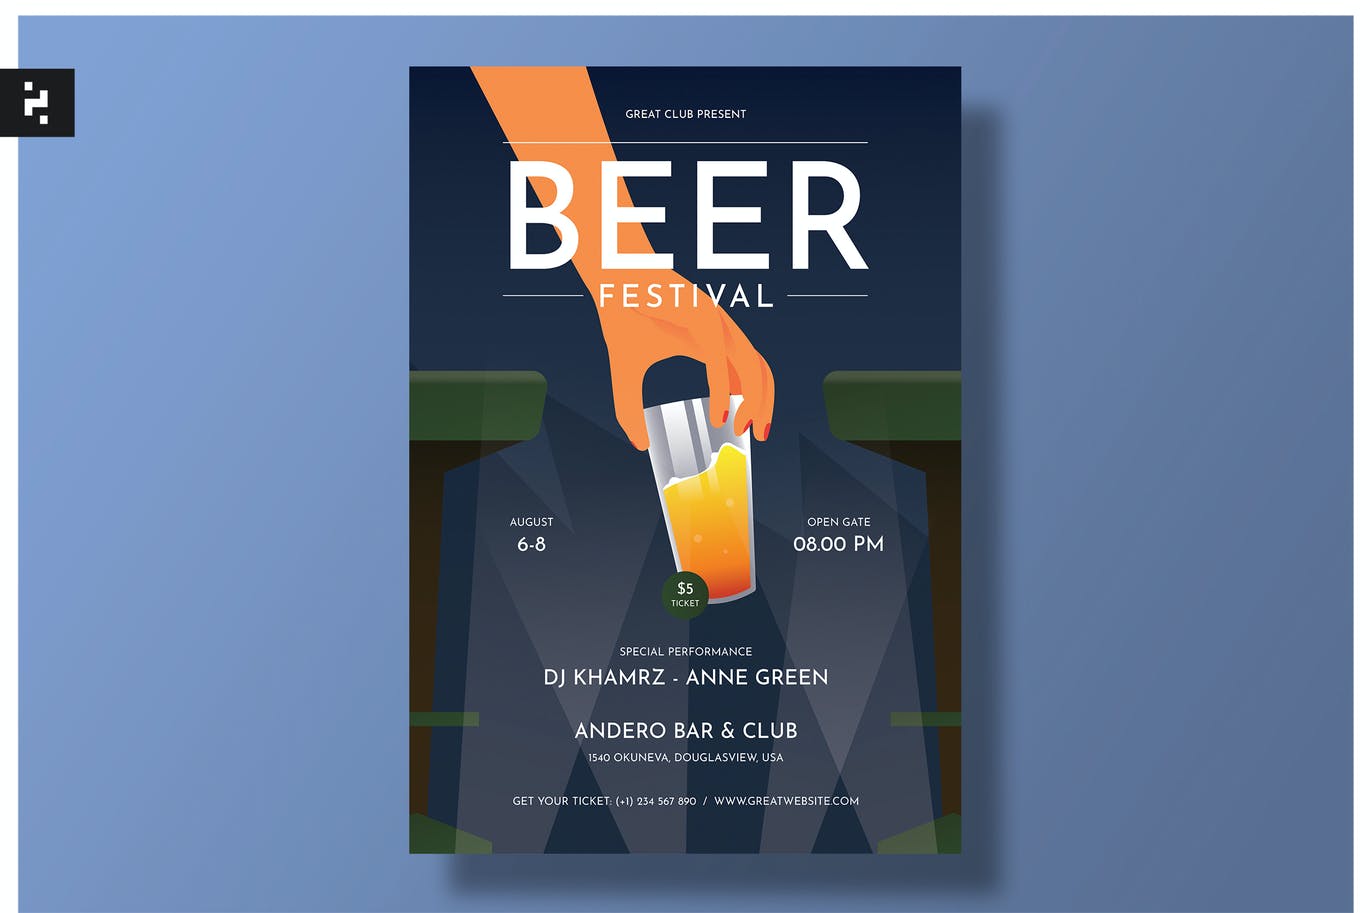 啤酒节海报传单设计模板 Beer Festival Flyer Template – Classic Art Deco 设计素材 第1张